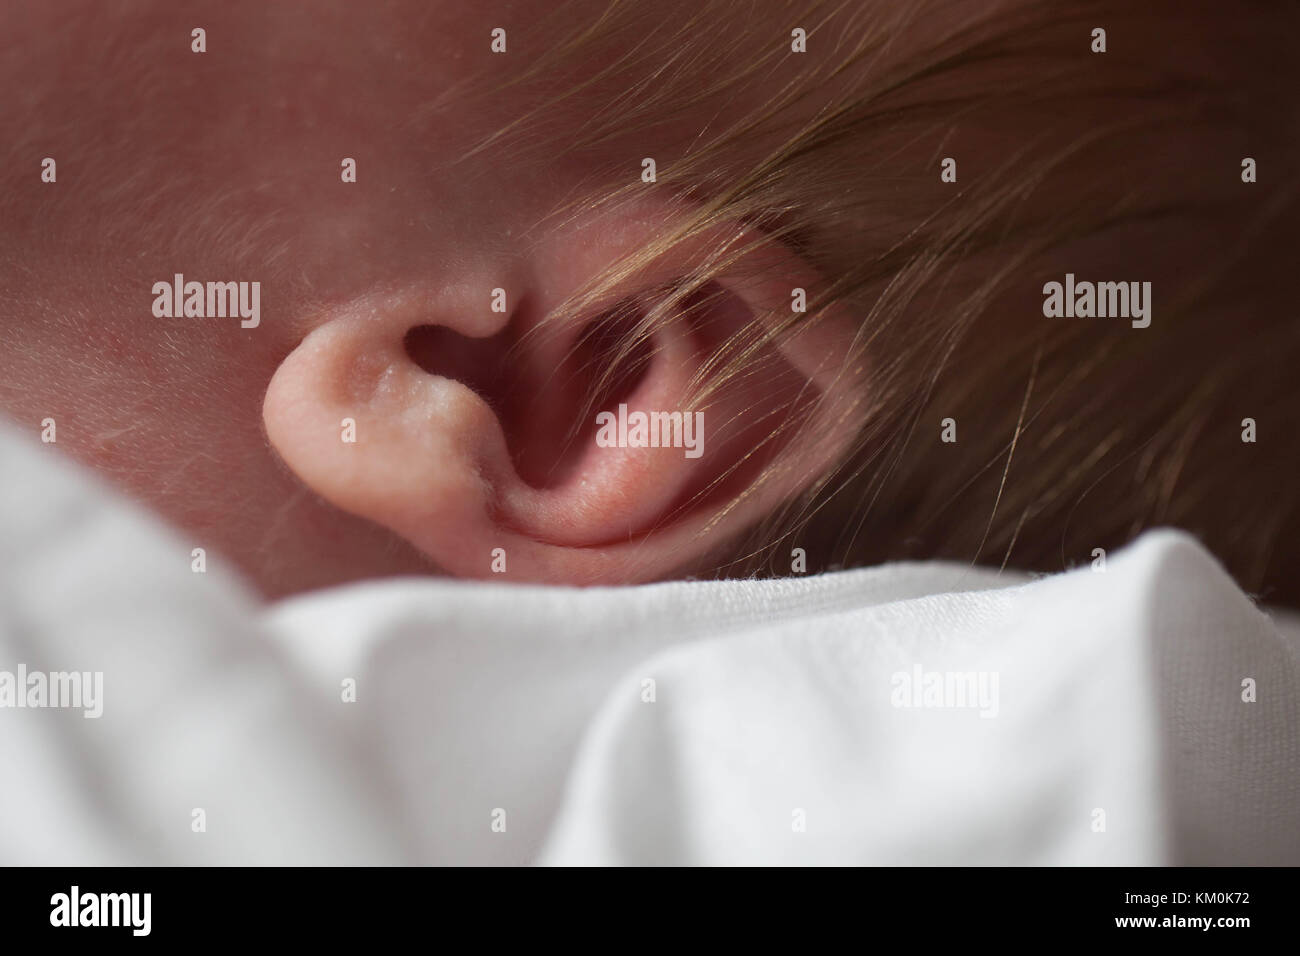 Ear toddler Caucasian closeup. Stock Photo